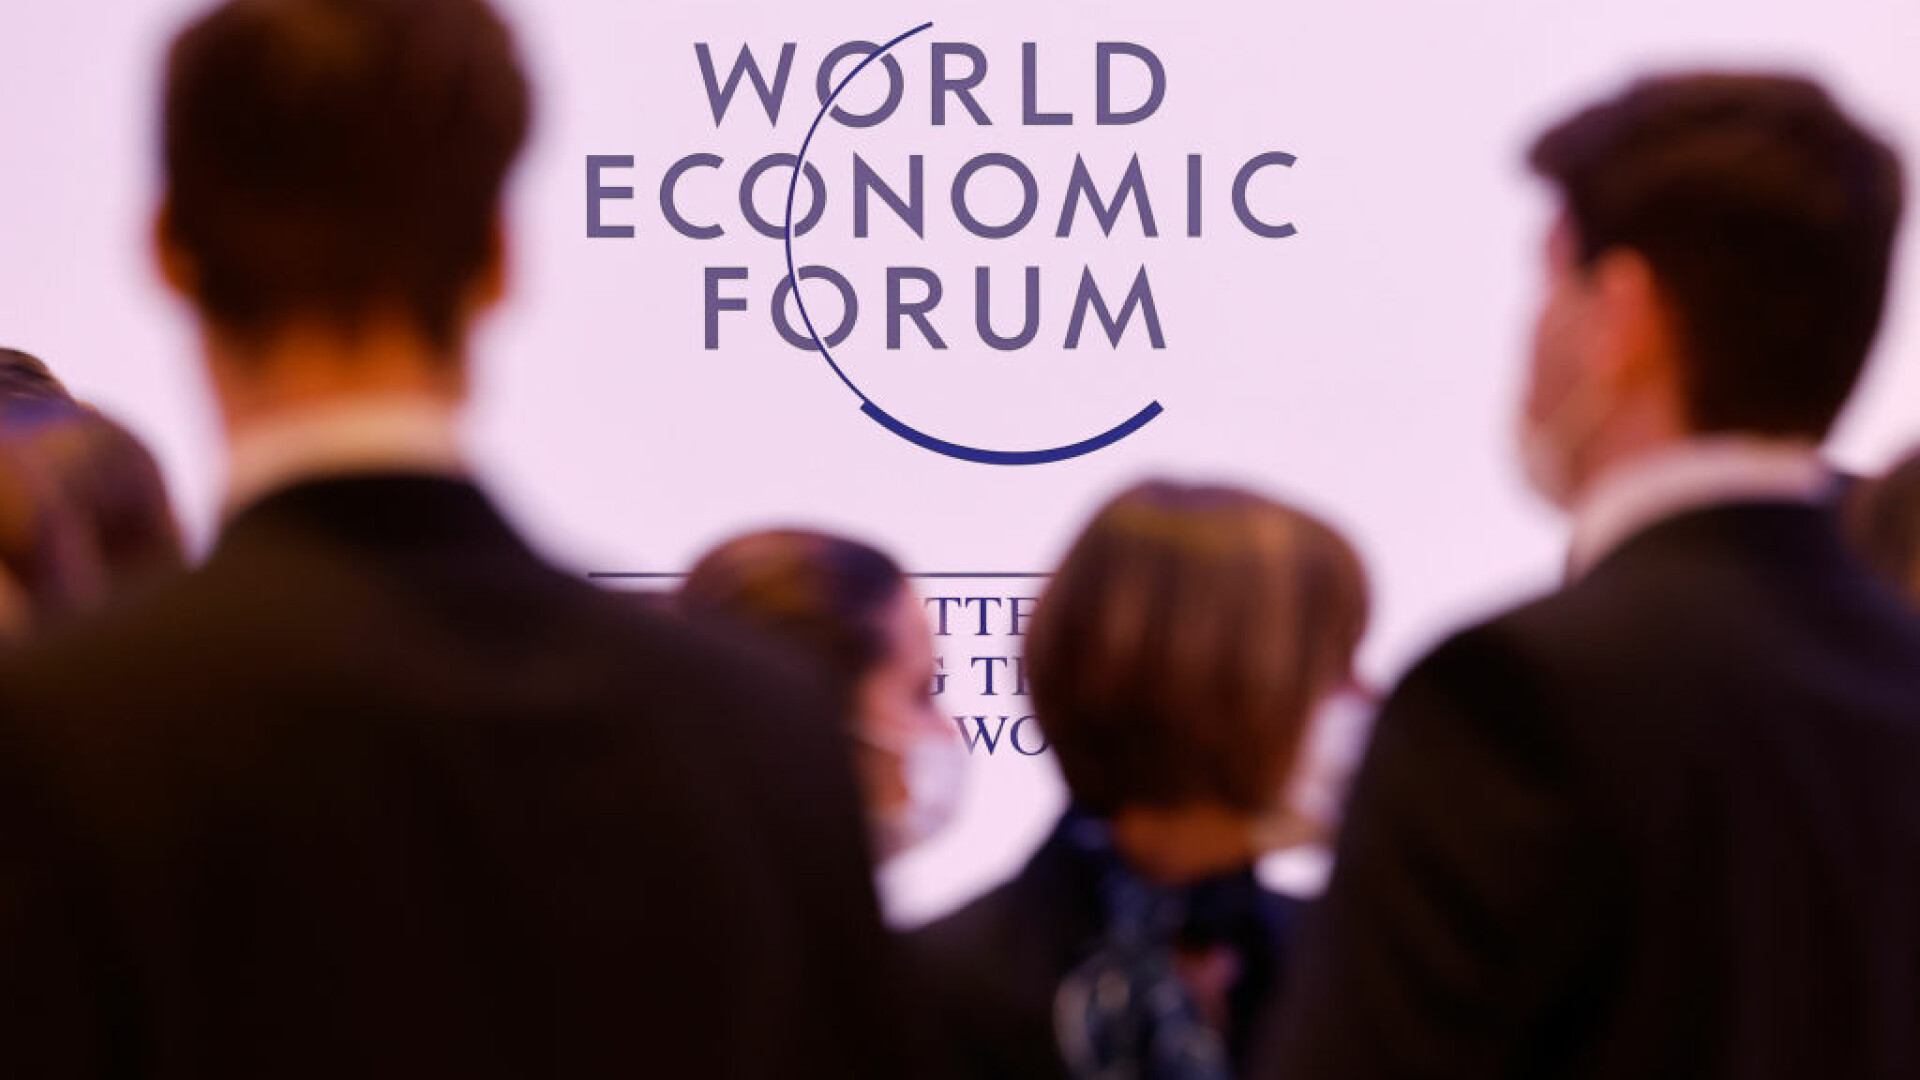 Majoritatea economiștilor de top așteaptă recesiunea mondială în 2023. Sondajul Forumului Economic Mondial de la Davos